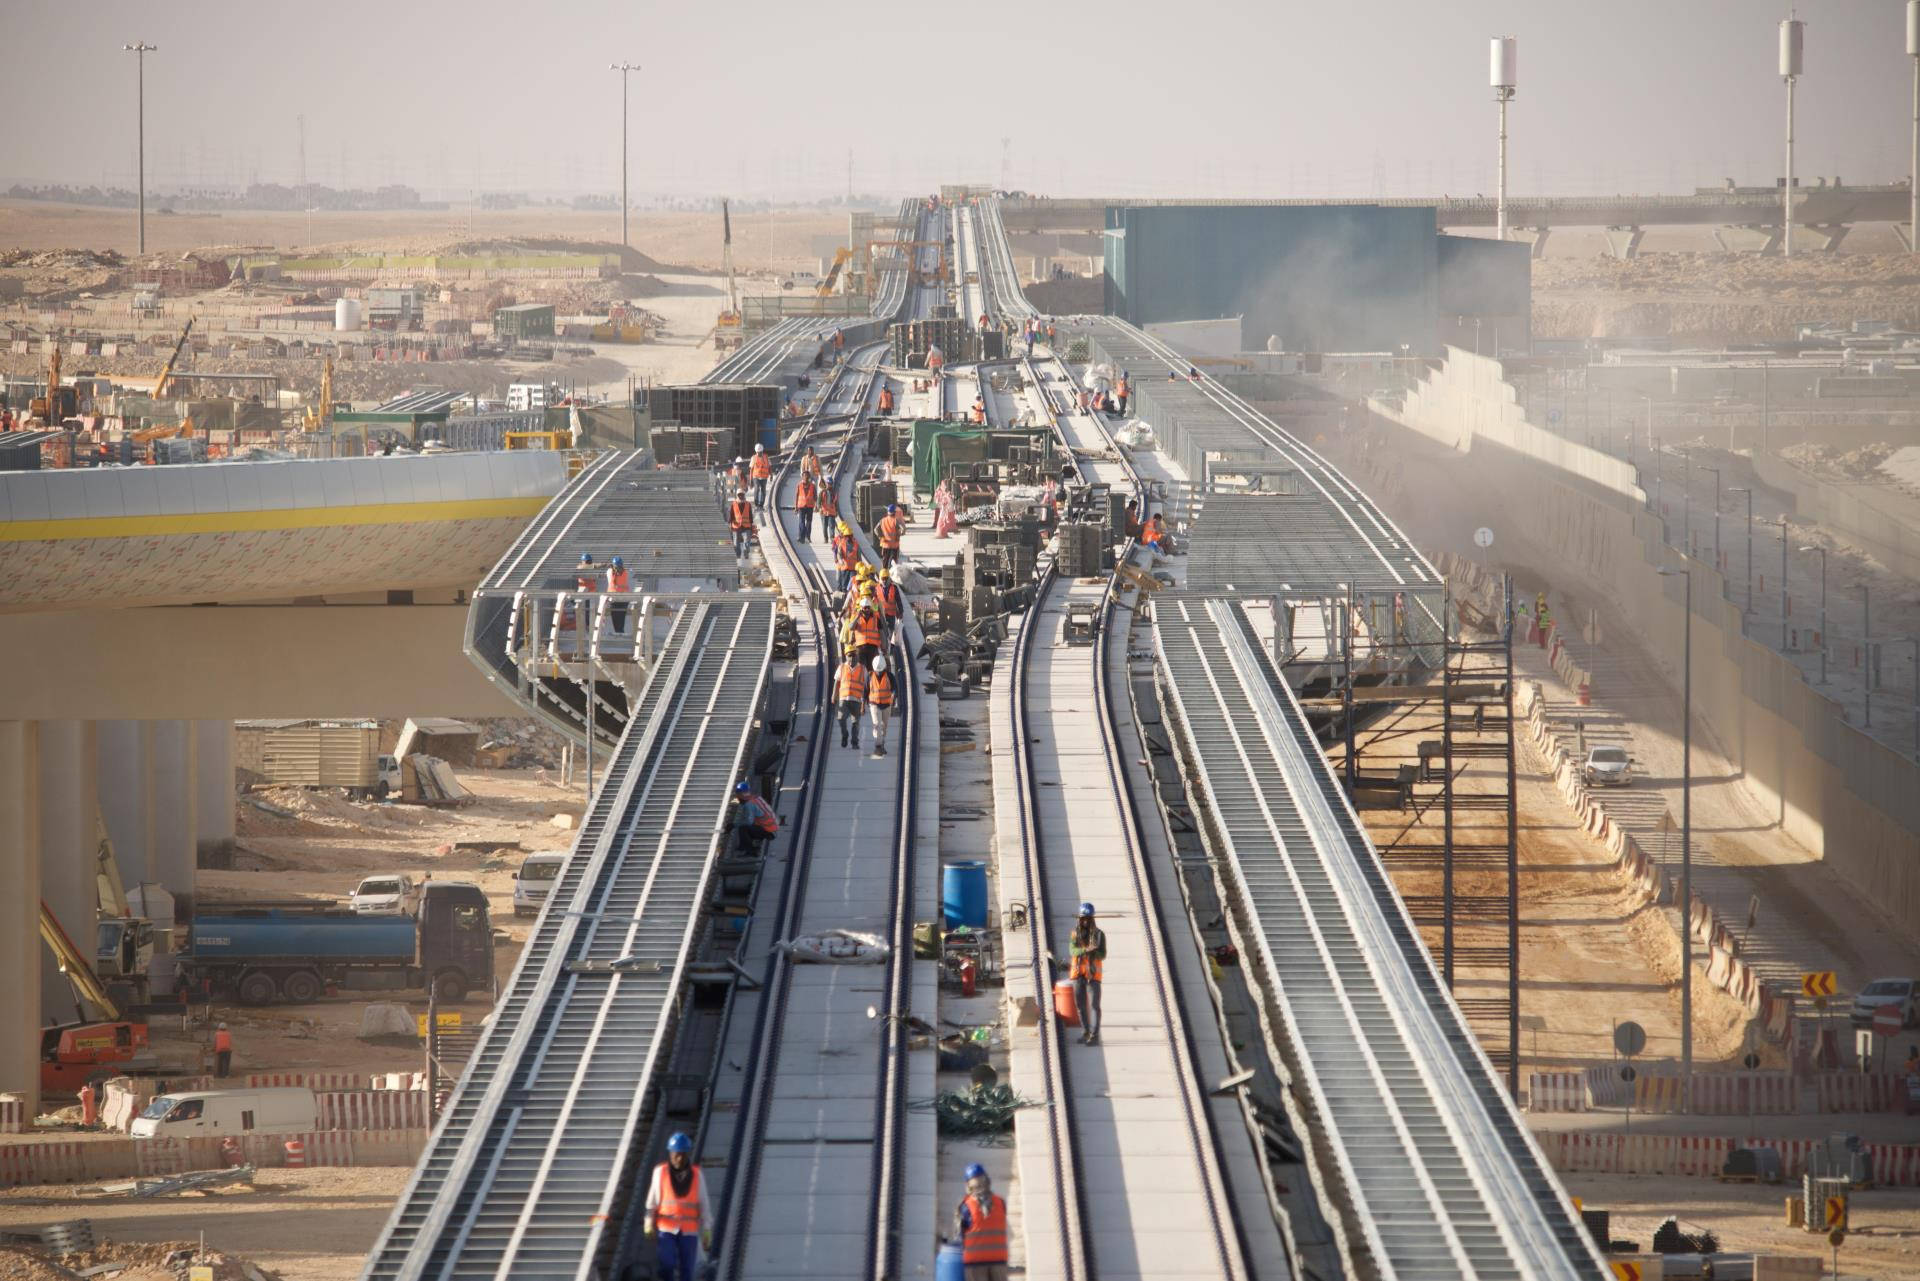 Railways On Progress In Riyadh Wallpaper